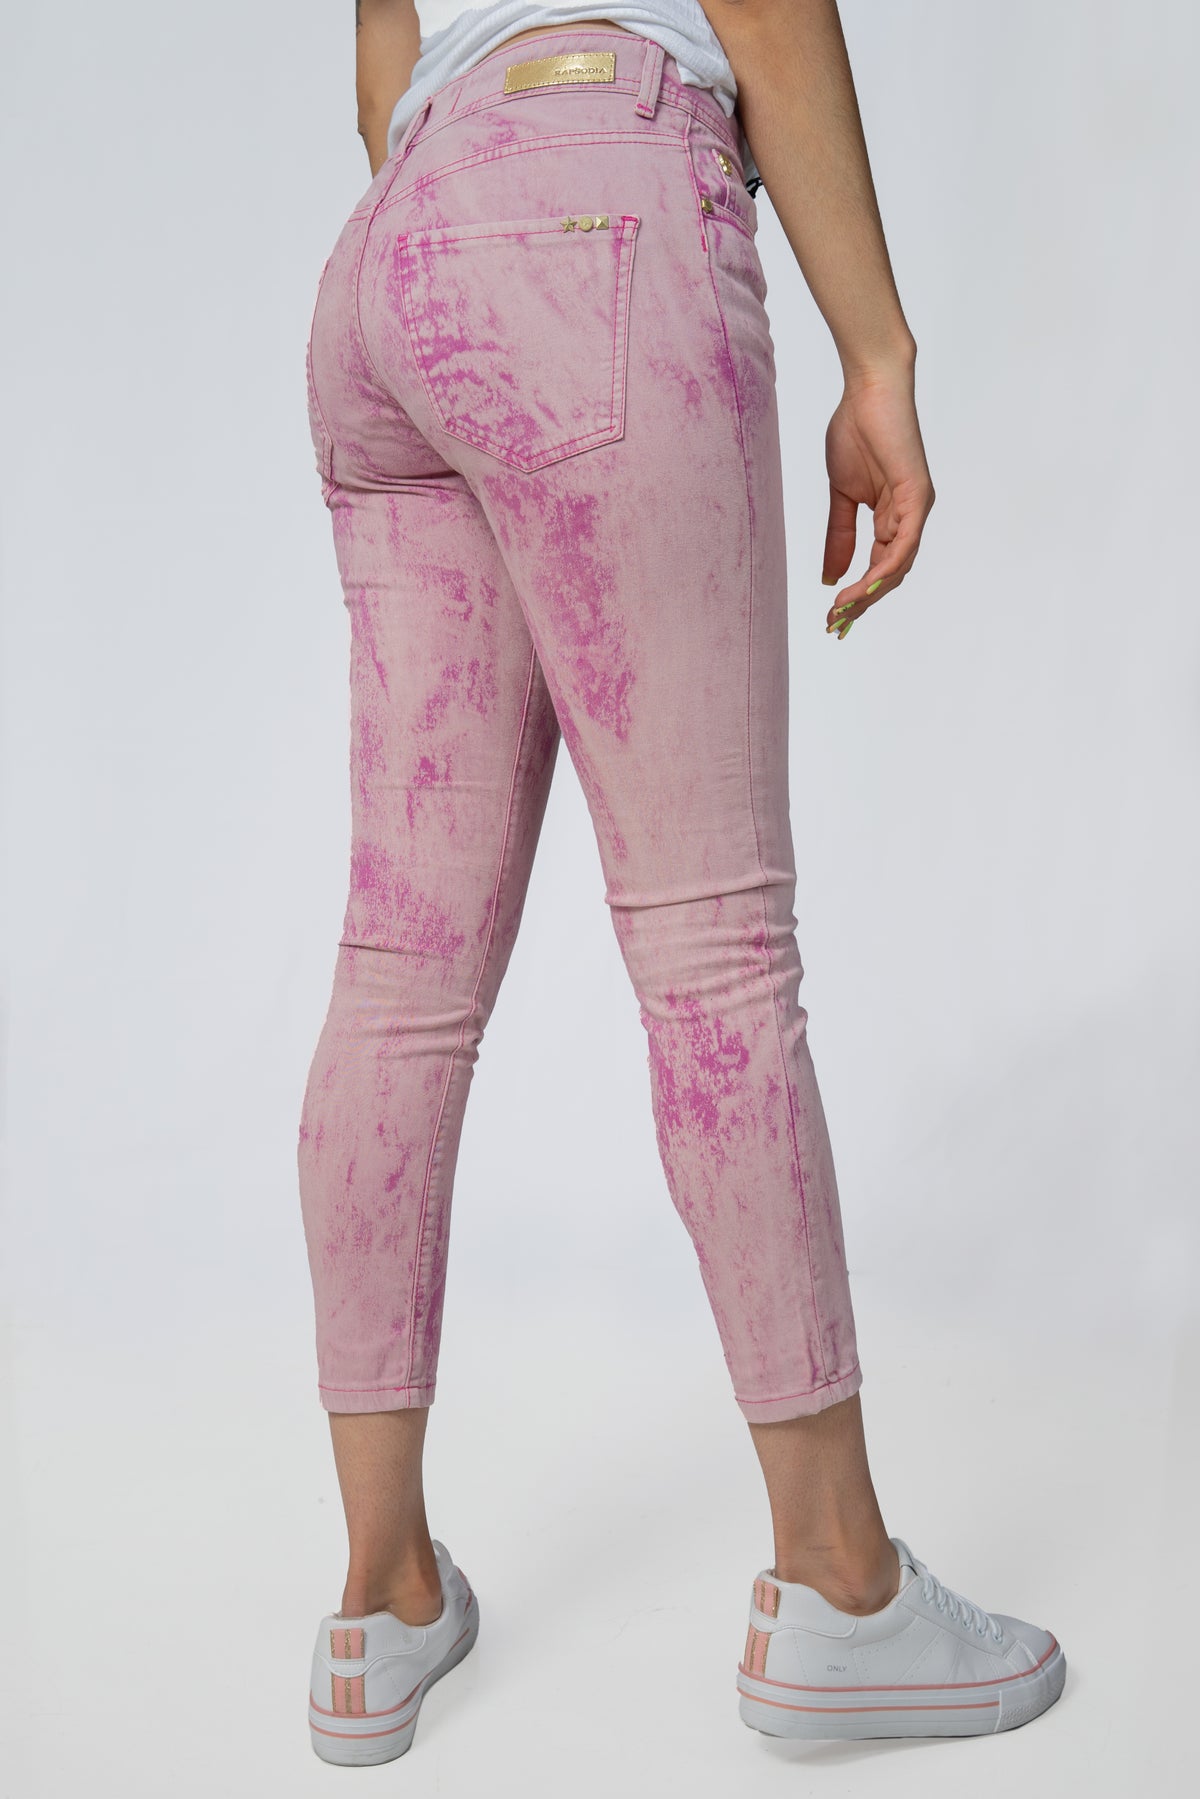 Jeans Rapsodia Queen Ankle Batik Colors Rosa